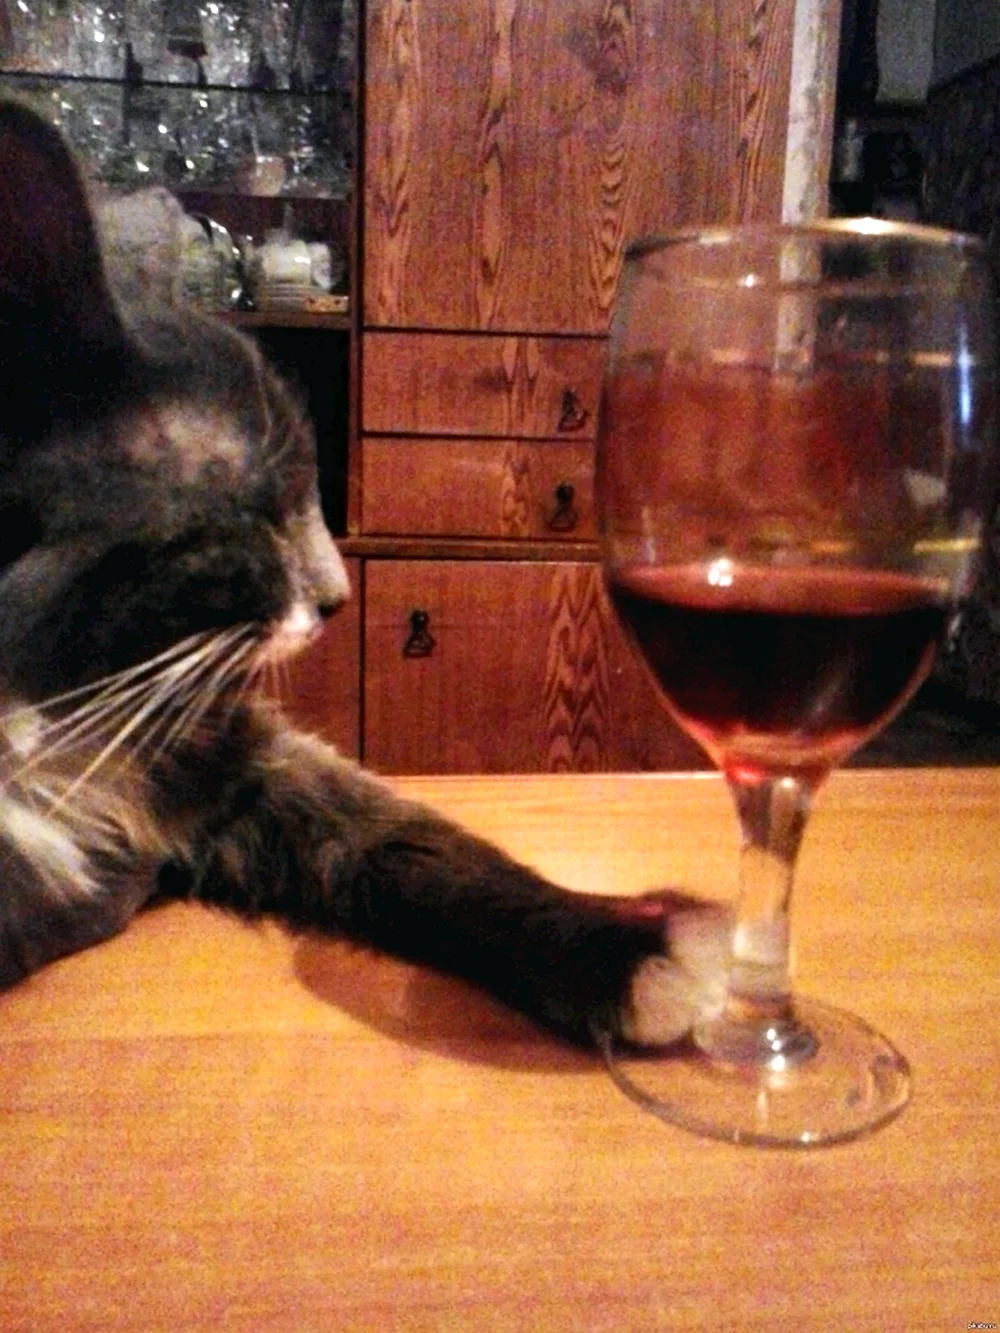 Кот с вином